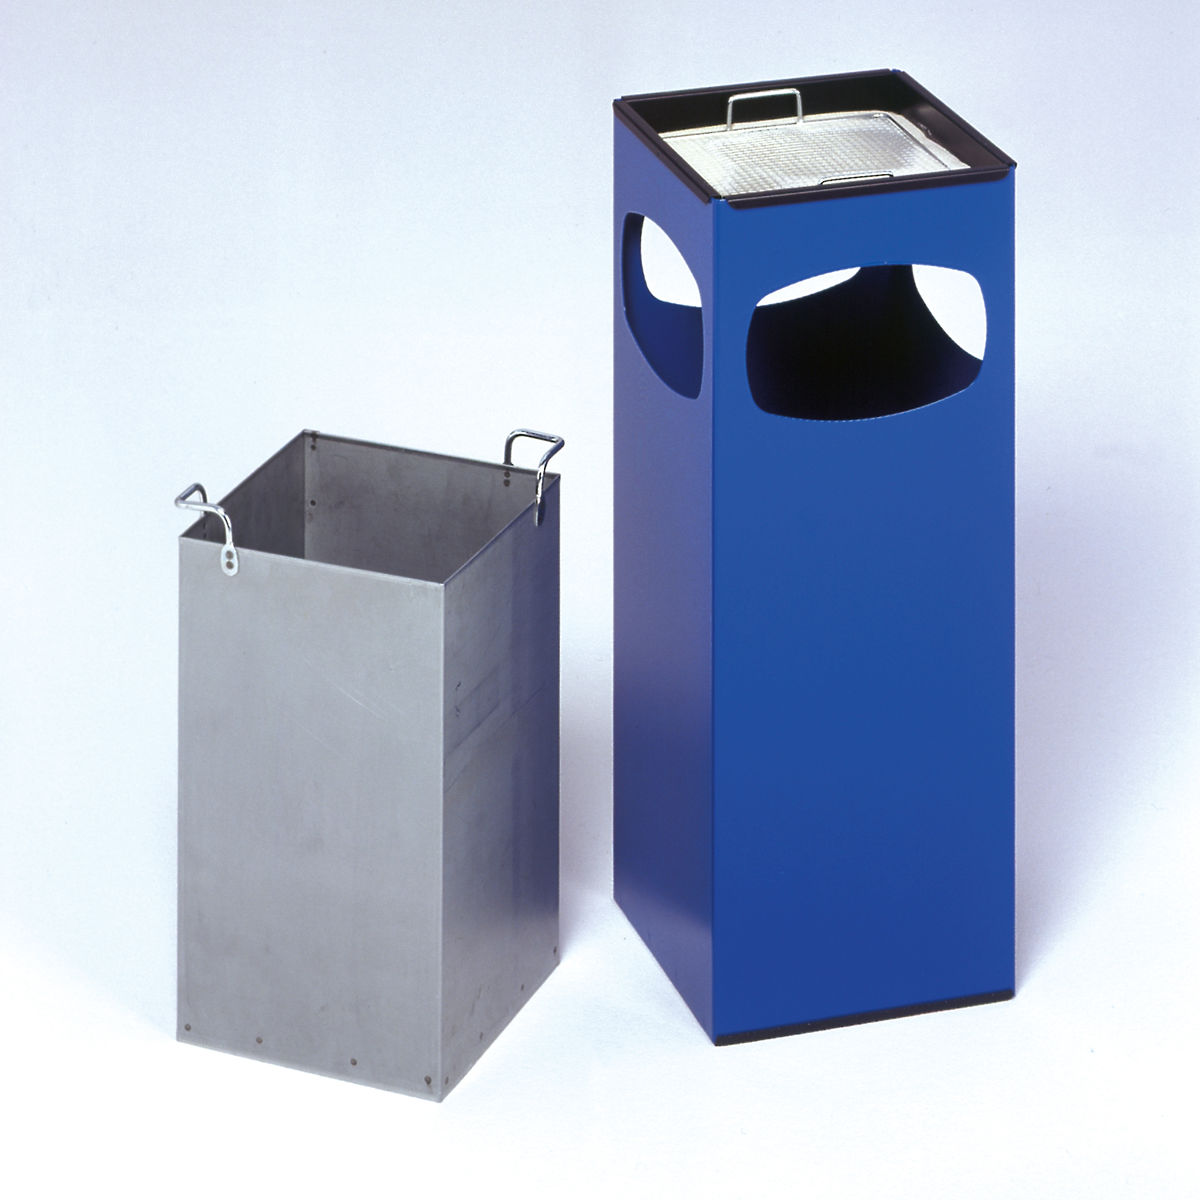 Standascher & Abfallbehälter